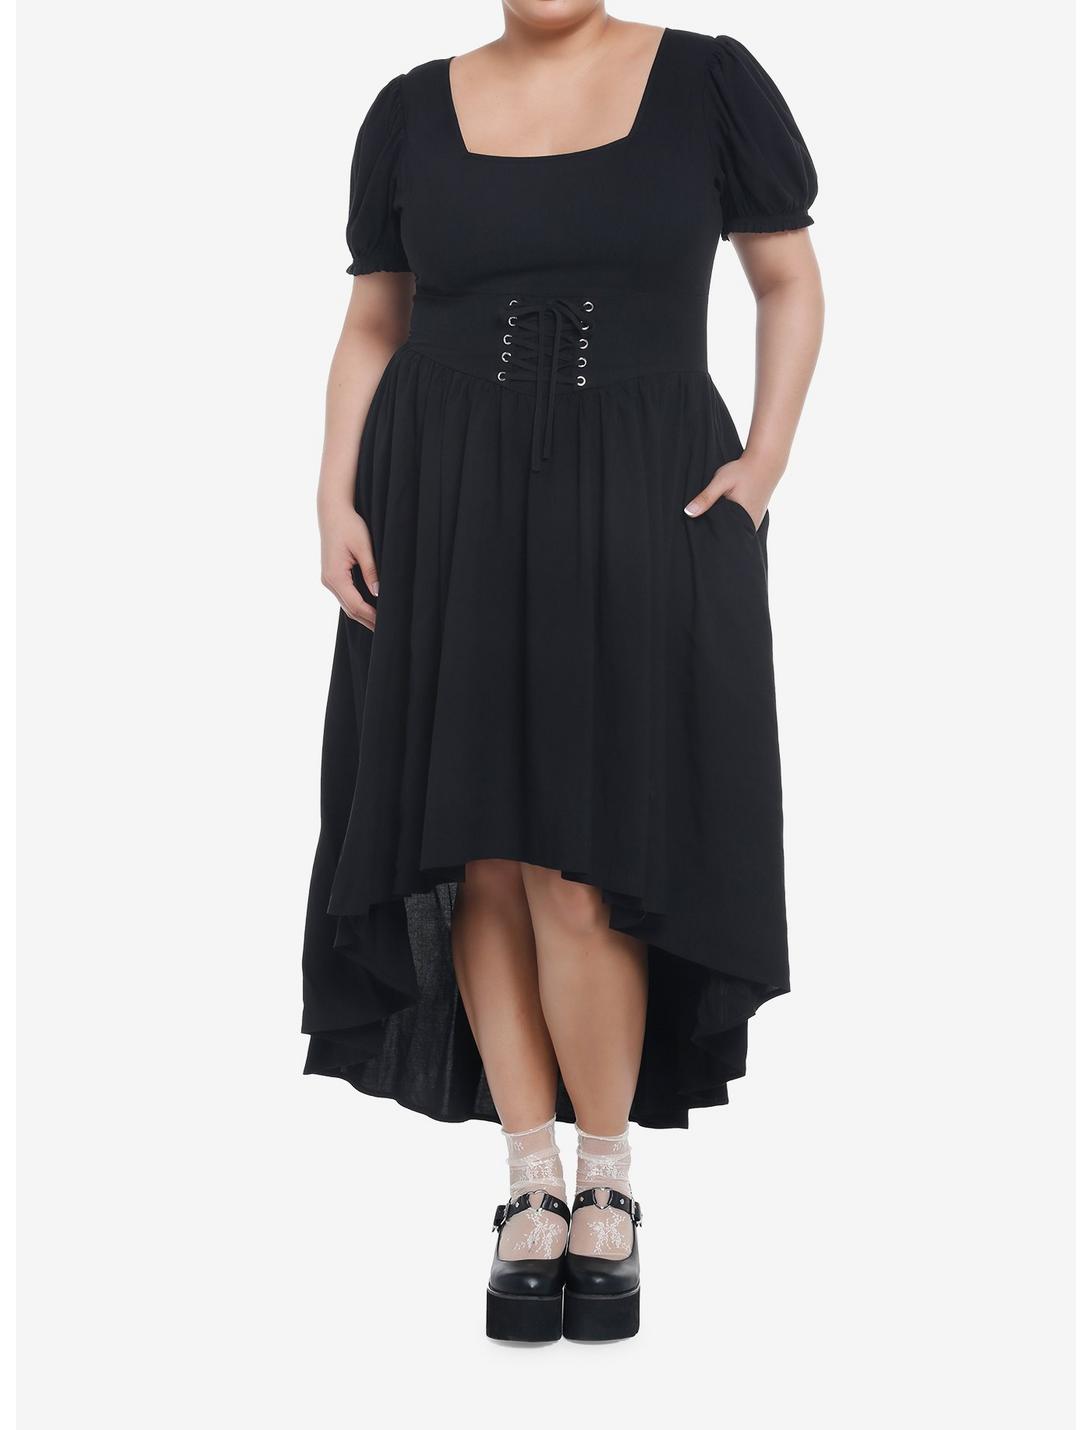 Black Lace-Up Corset Hi-Low Dress Plus Size, MULTI, hi-res